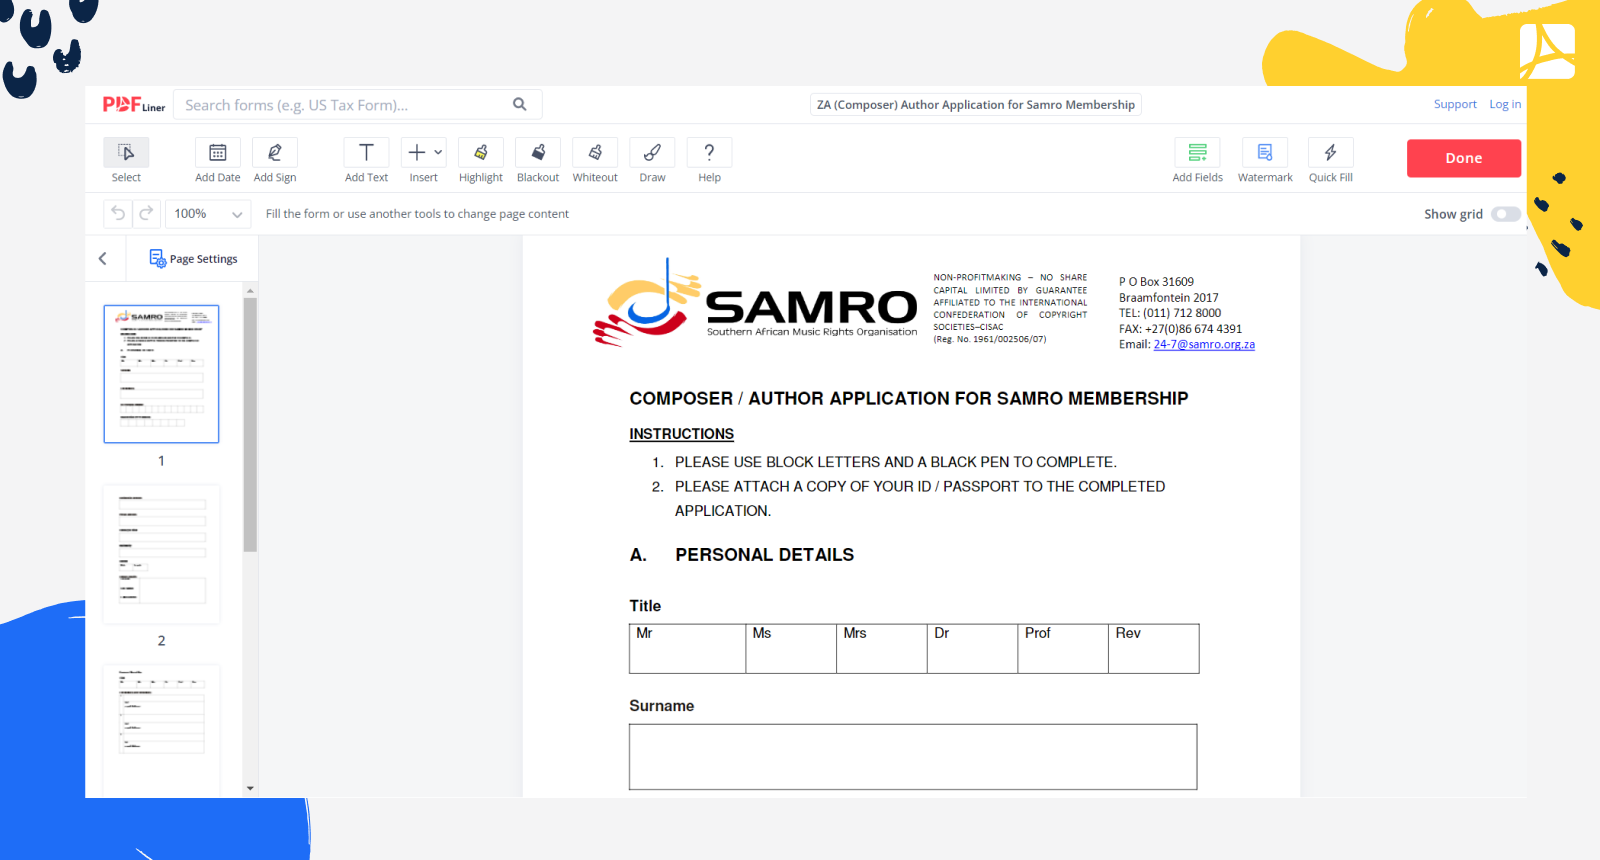 ZA (Composer) Author Application for Samro Membership Form Screenshot